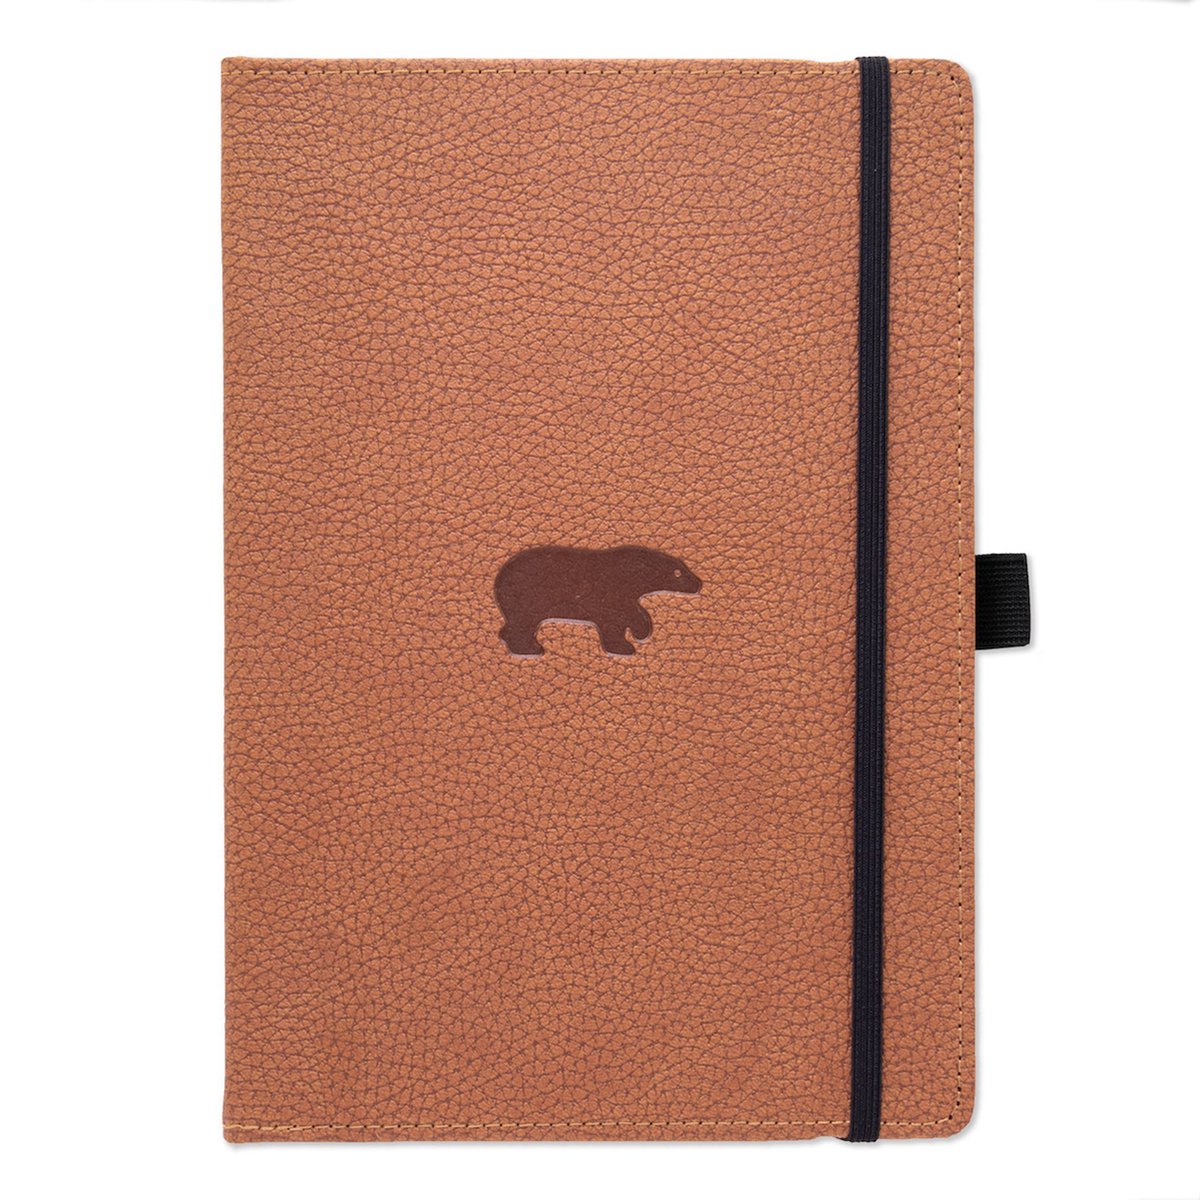 Dingbats* Wildlife A4 Notitieboek – Brown Bear Stippen – Bullet Journal met 100 gsm Inktvrij Papier – Schetsboek met Harde Kaft, Elastische Sluiting en Bladwijzer